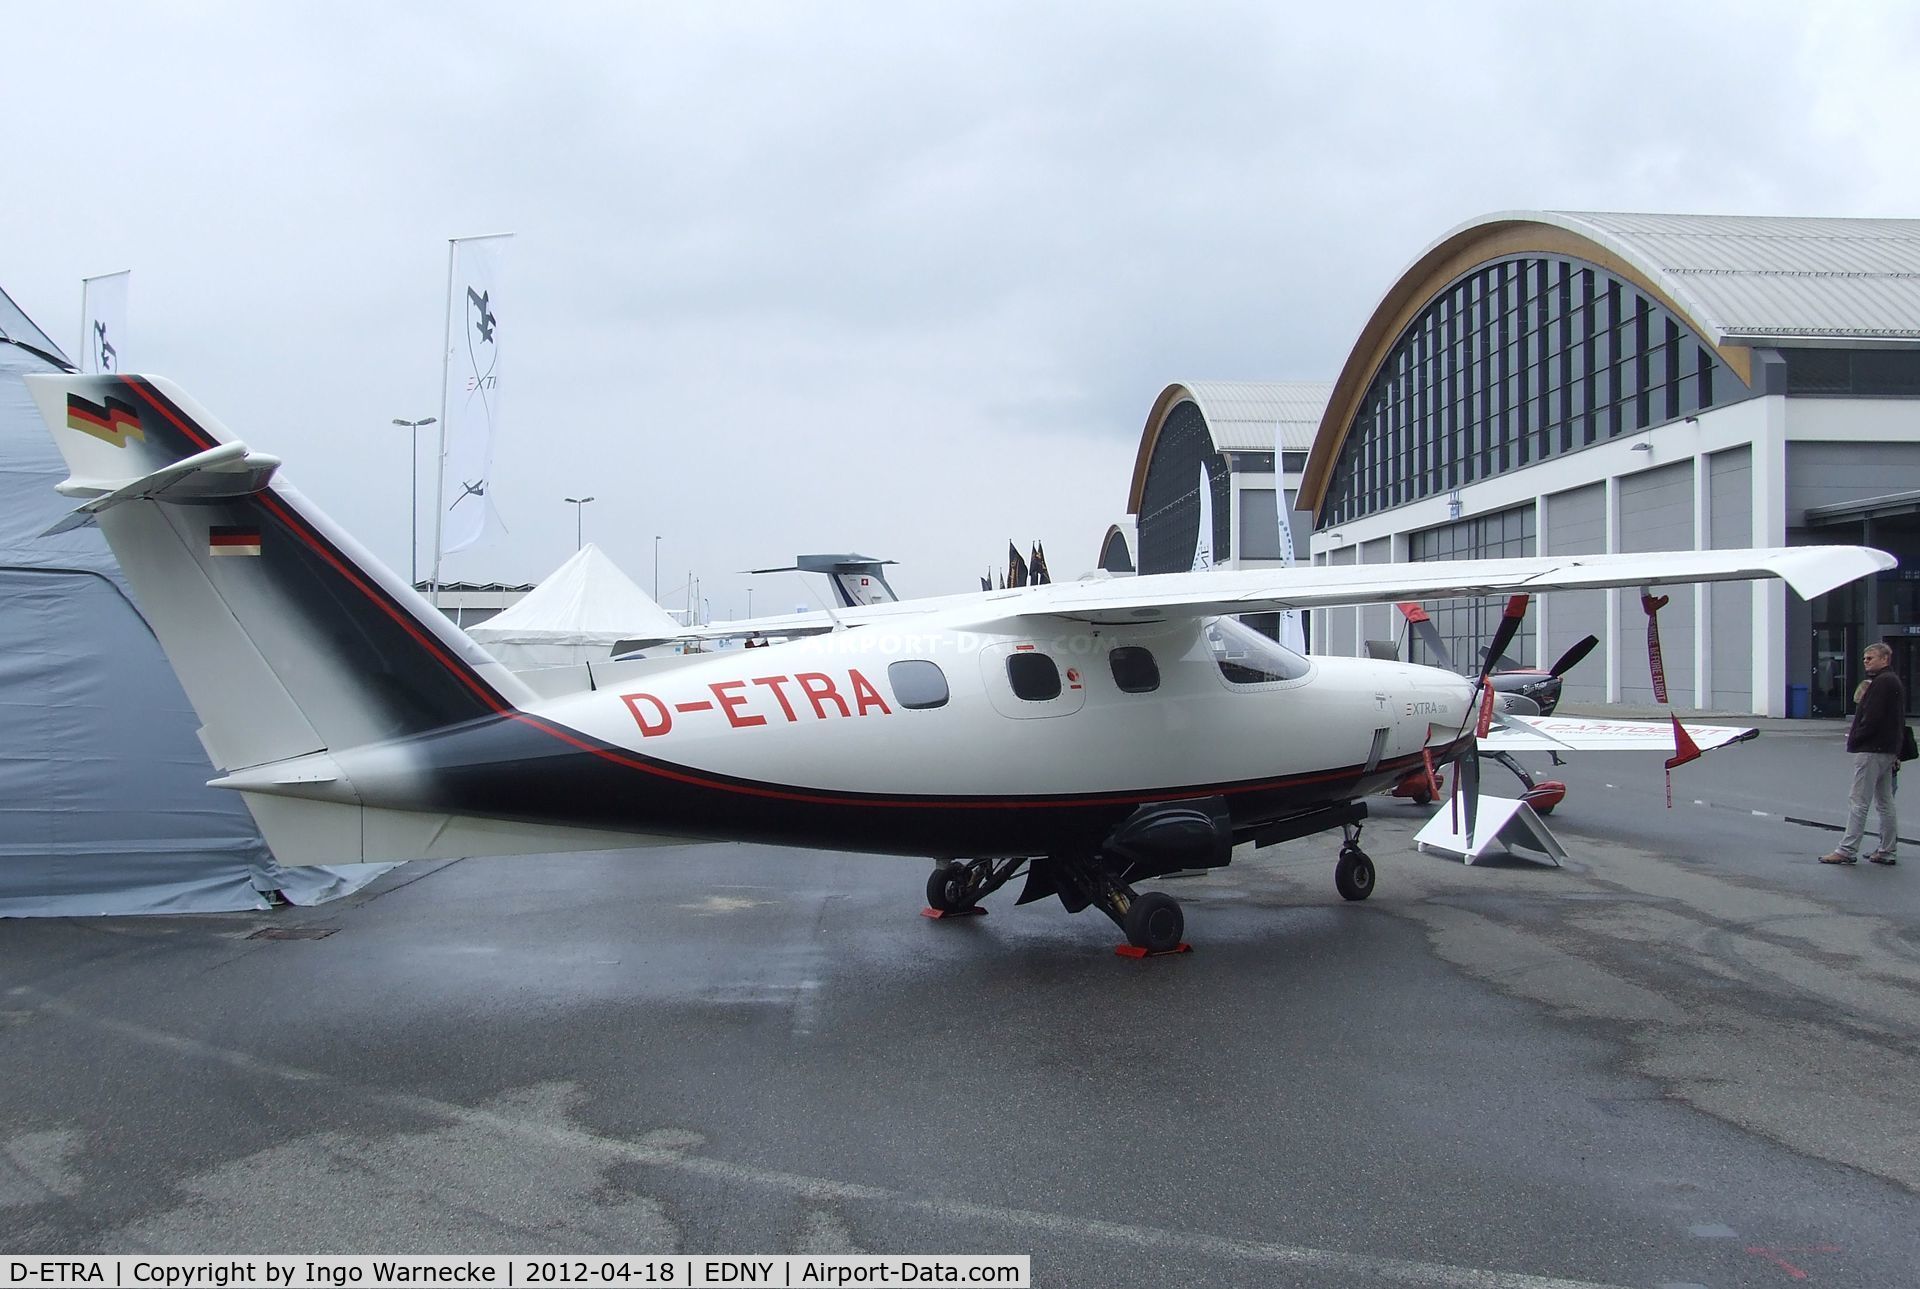 D-ETRA, Extra EA-500 C/N 002, Extra EA-500 at the AERO 2012, Friedrichshafen